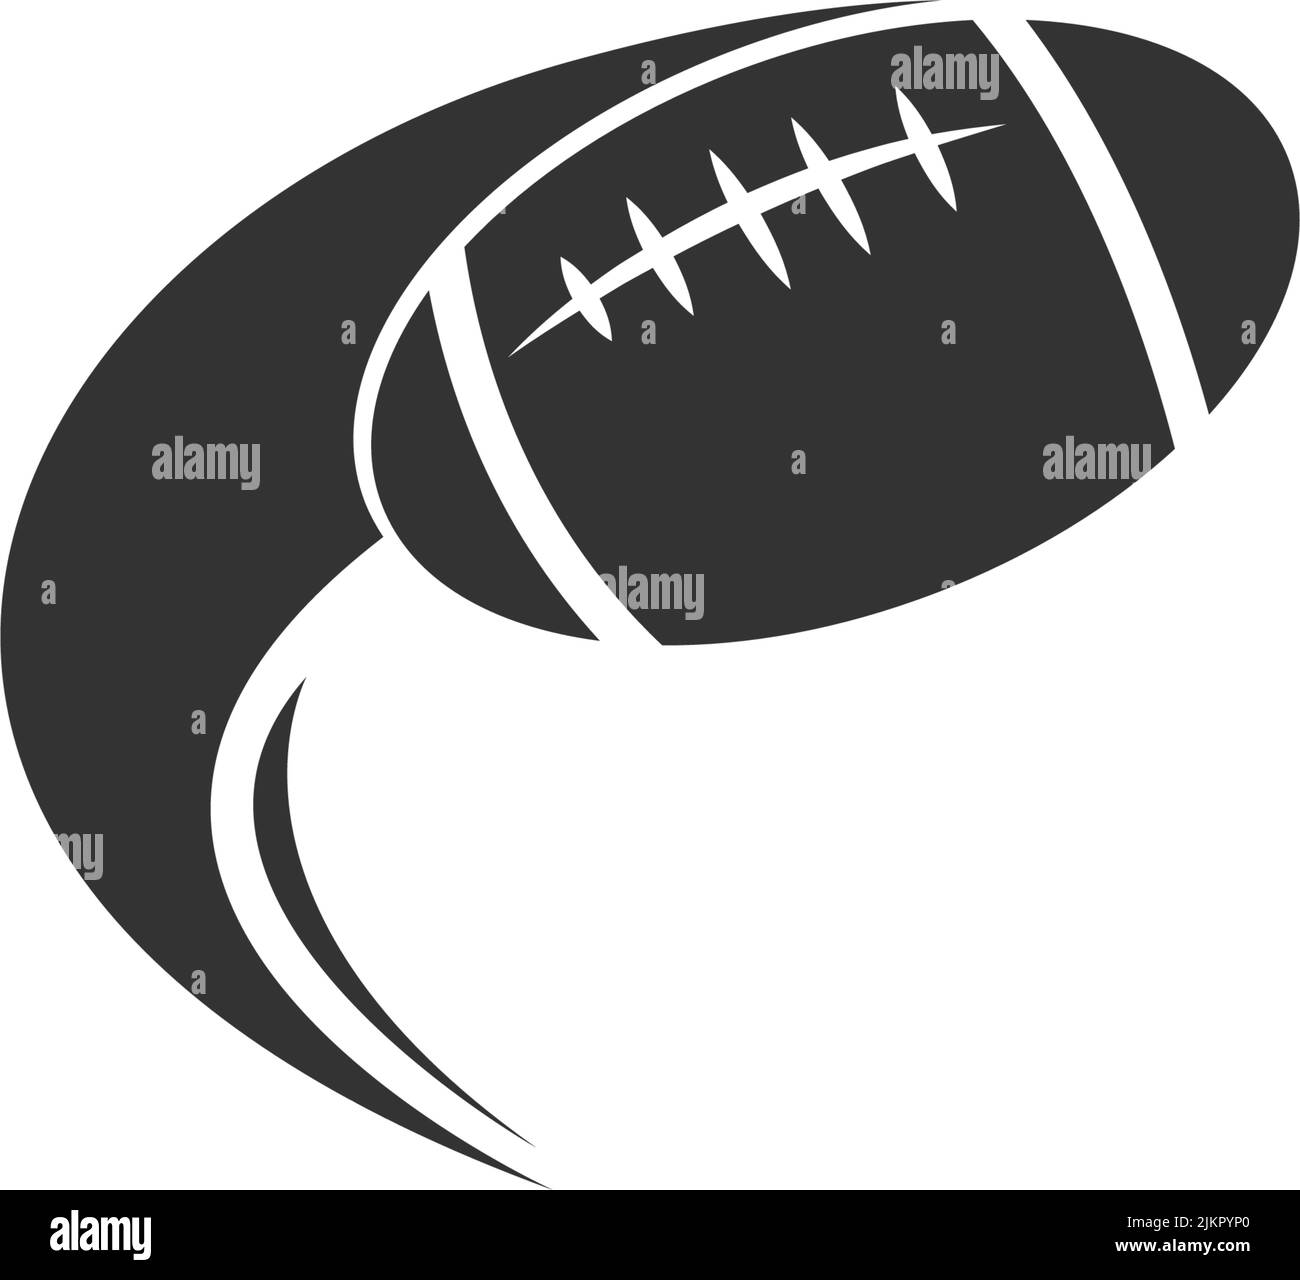 Vorlage zur Illustration des Rugby-Ball-Symbols im Design Stock Vektor